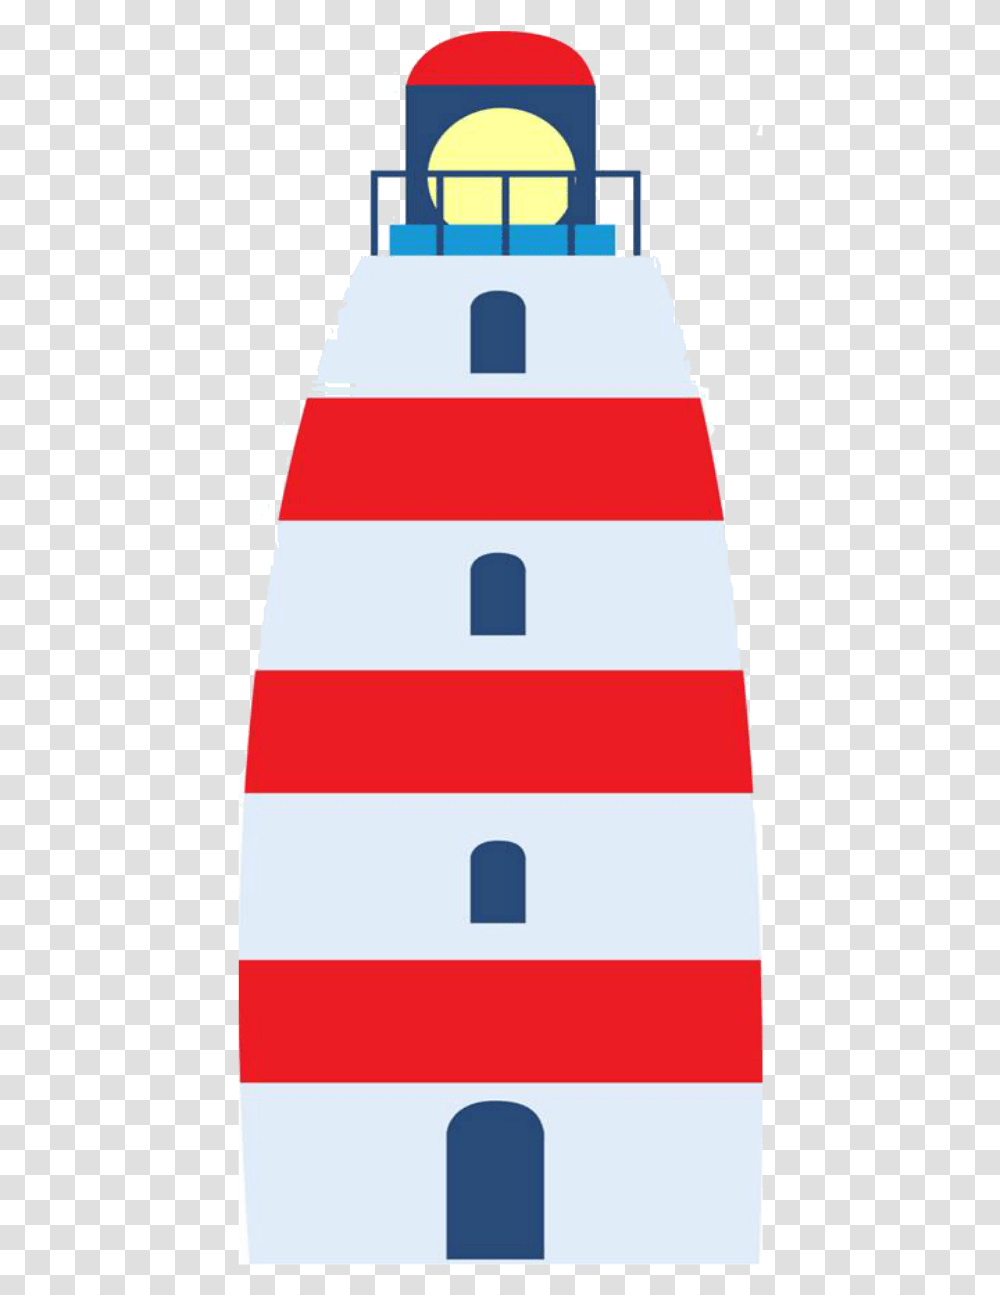 Sailor Clipart Lighthouse Torre Do Ursinho Marinheiro, Security, Transportation Transparent Png